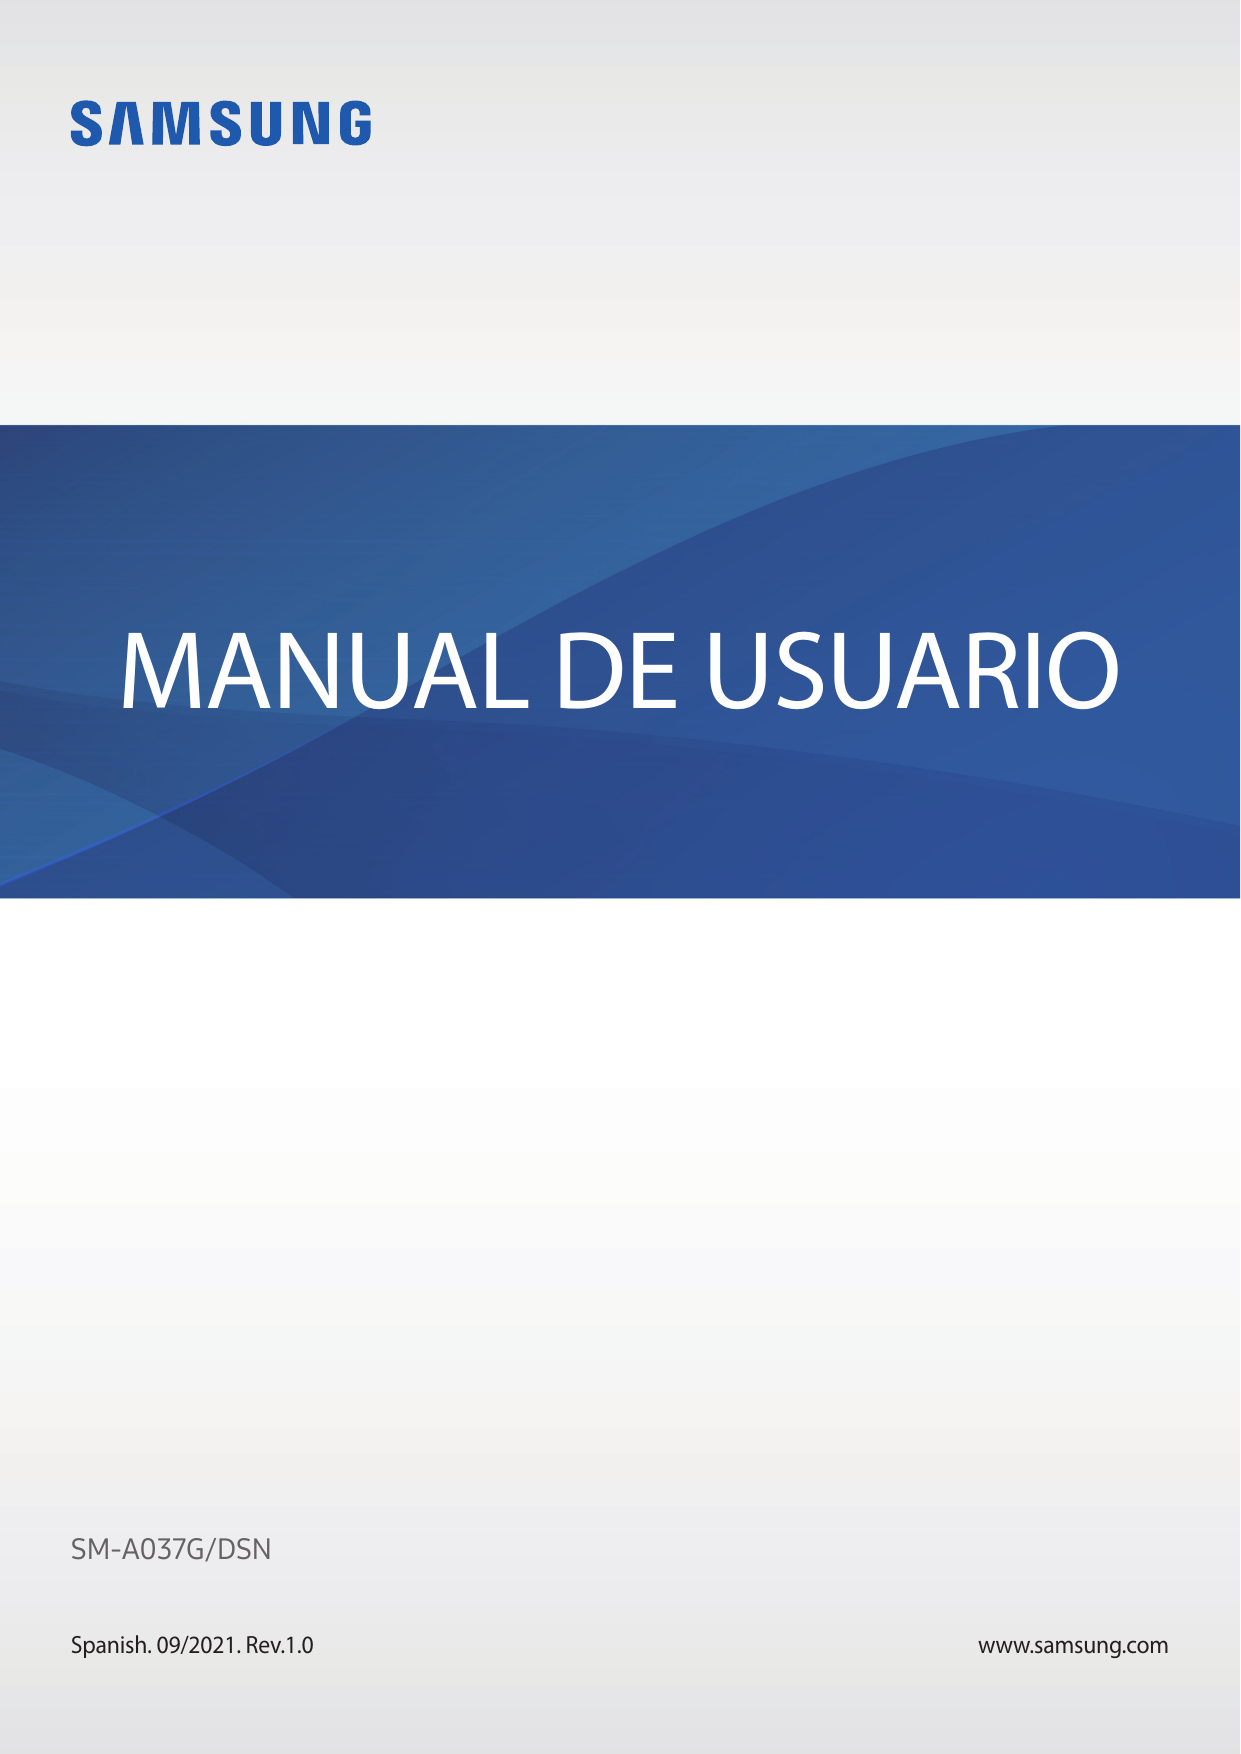 MANUAL DE USUARIOSM-A037G/DSNSpanish. 09/2021. Rev.1.0www.samsung.com